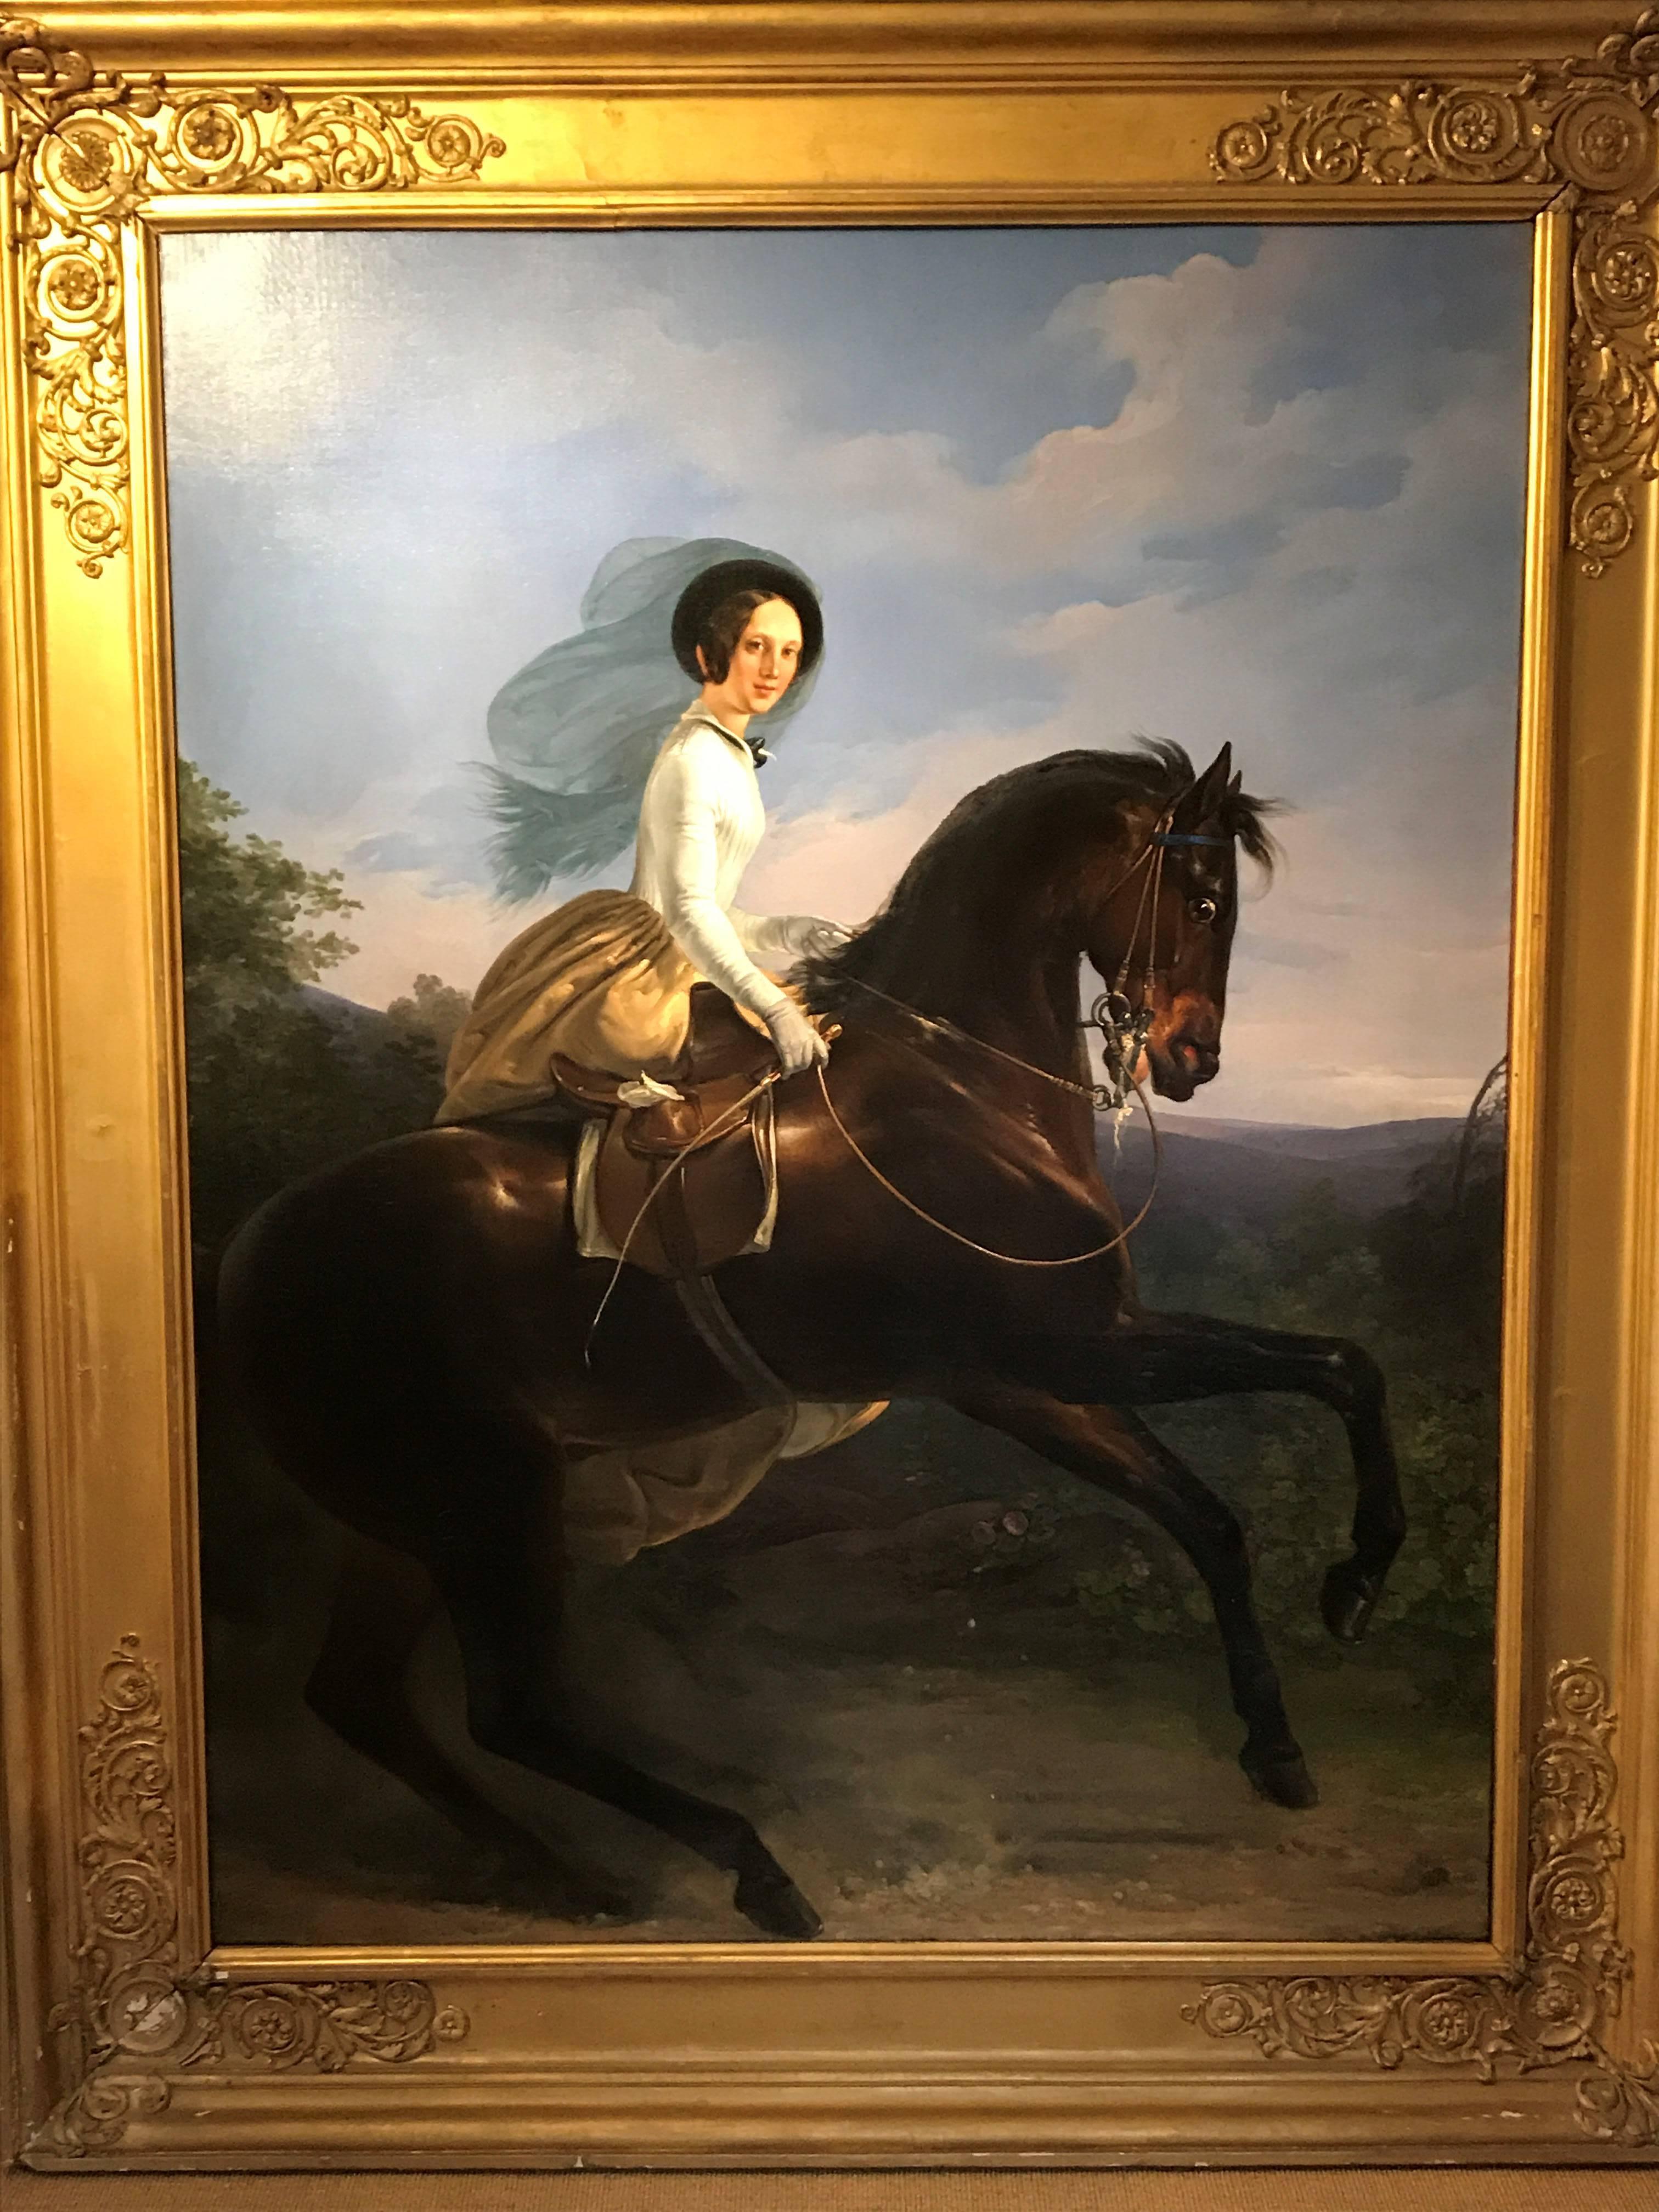 Portrait de la Princesse de Joinville chevauchant un cheval bai
Henri d'Aincy, Le Comte Monpezat (français 1817-1859)
Peint vers 1837-9
huile sur toile
113 x 92 pouces (y compris le cadre)
92 x 70 pouces (non encadré)

Provenance - d'une collection